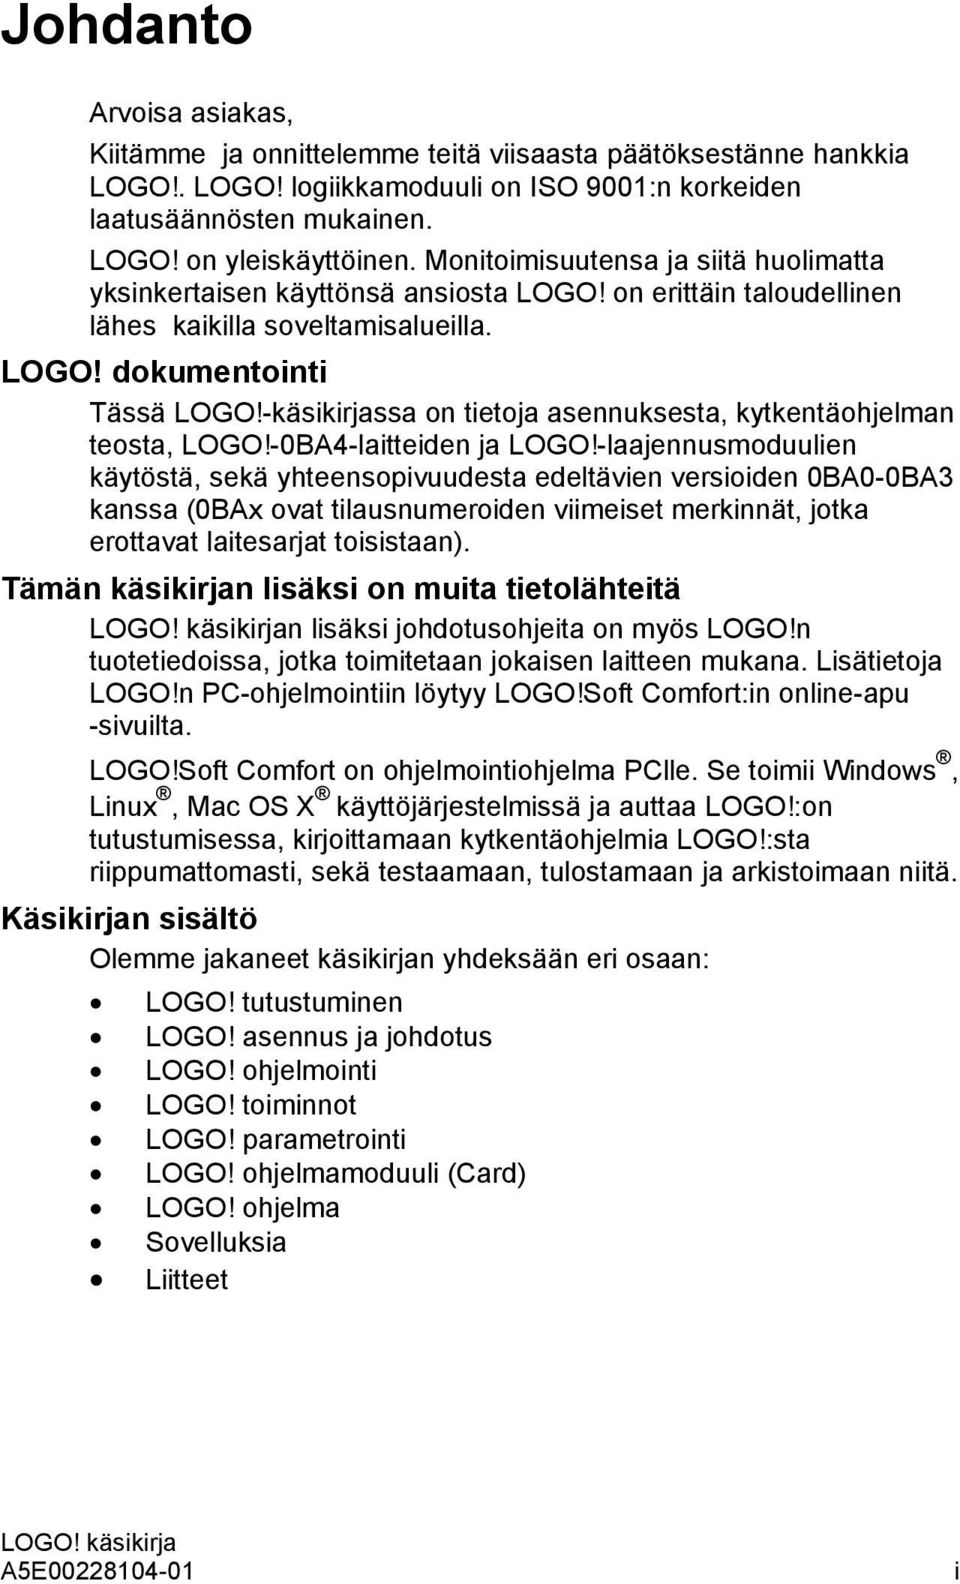 -käsikirjassa on tietoja asennuksesta, kytkentäohjelman teosta, LOGO!-0BA4-laitteiden ja LOGO!